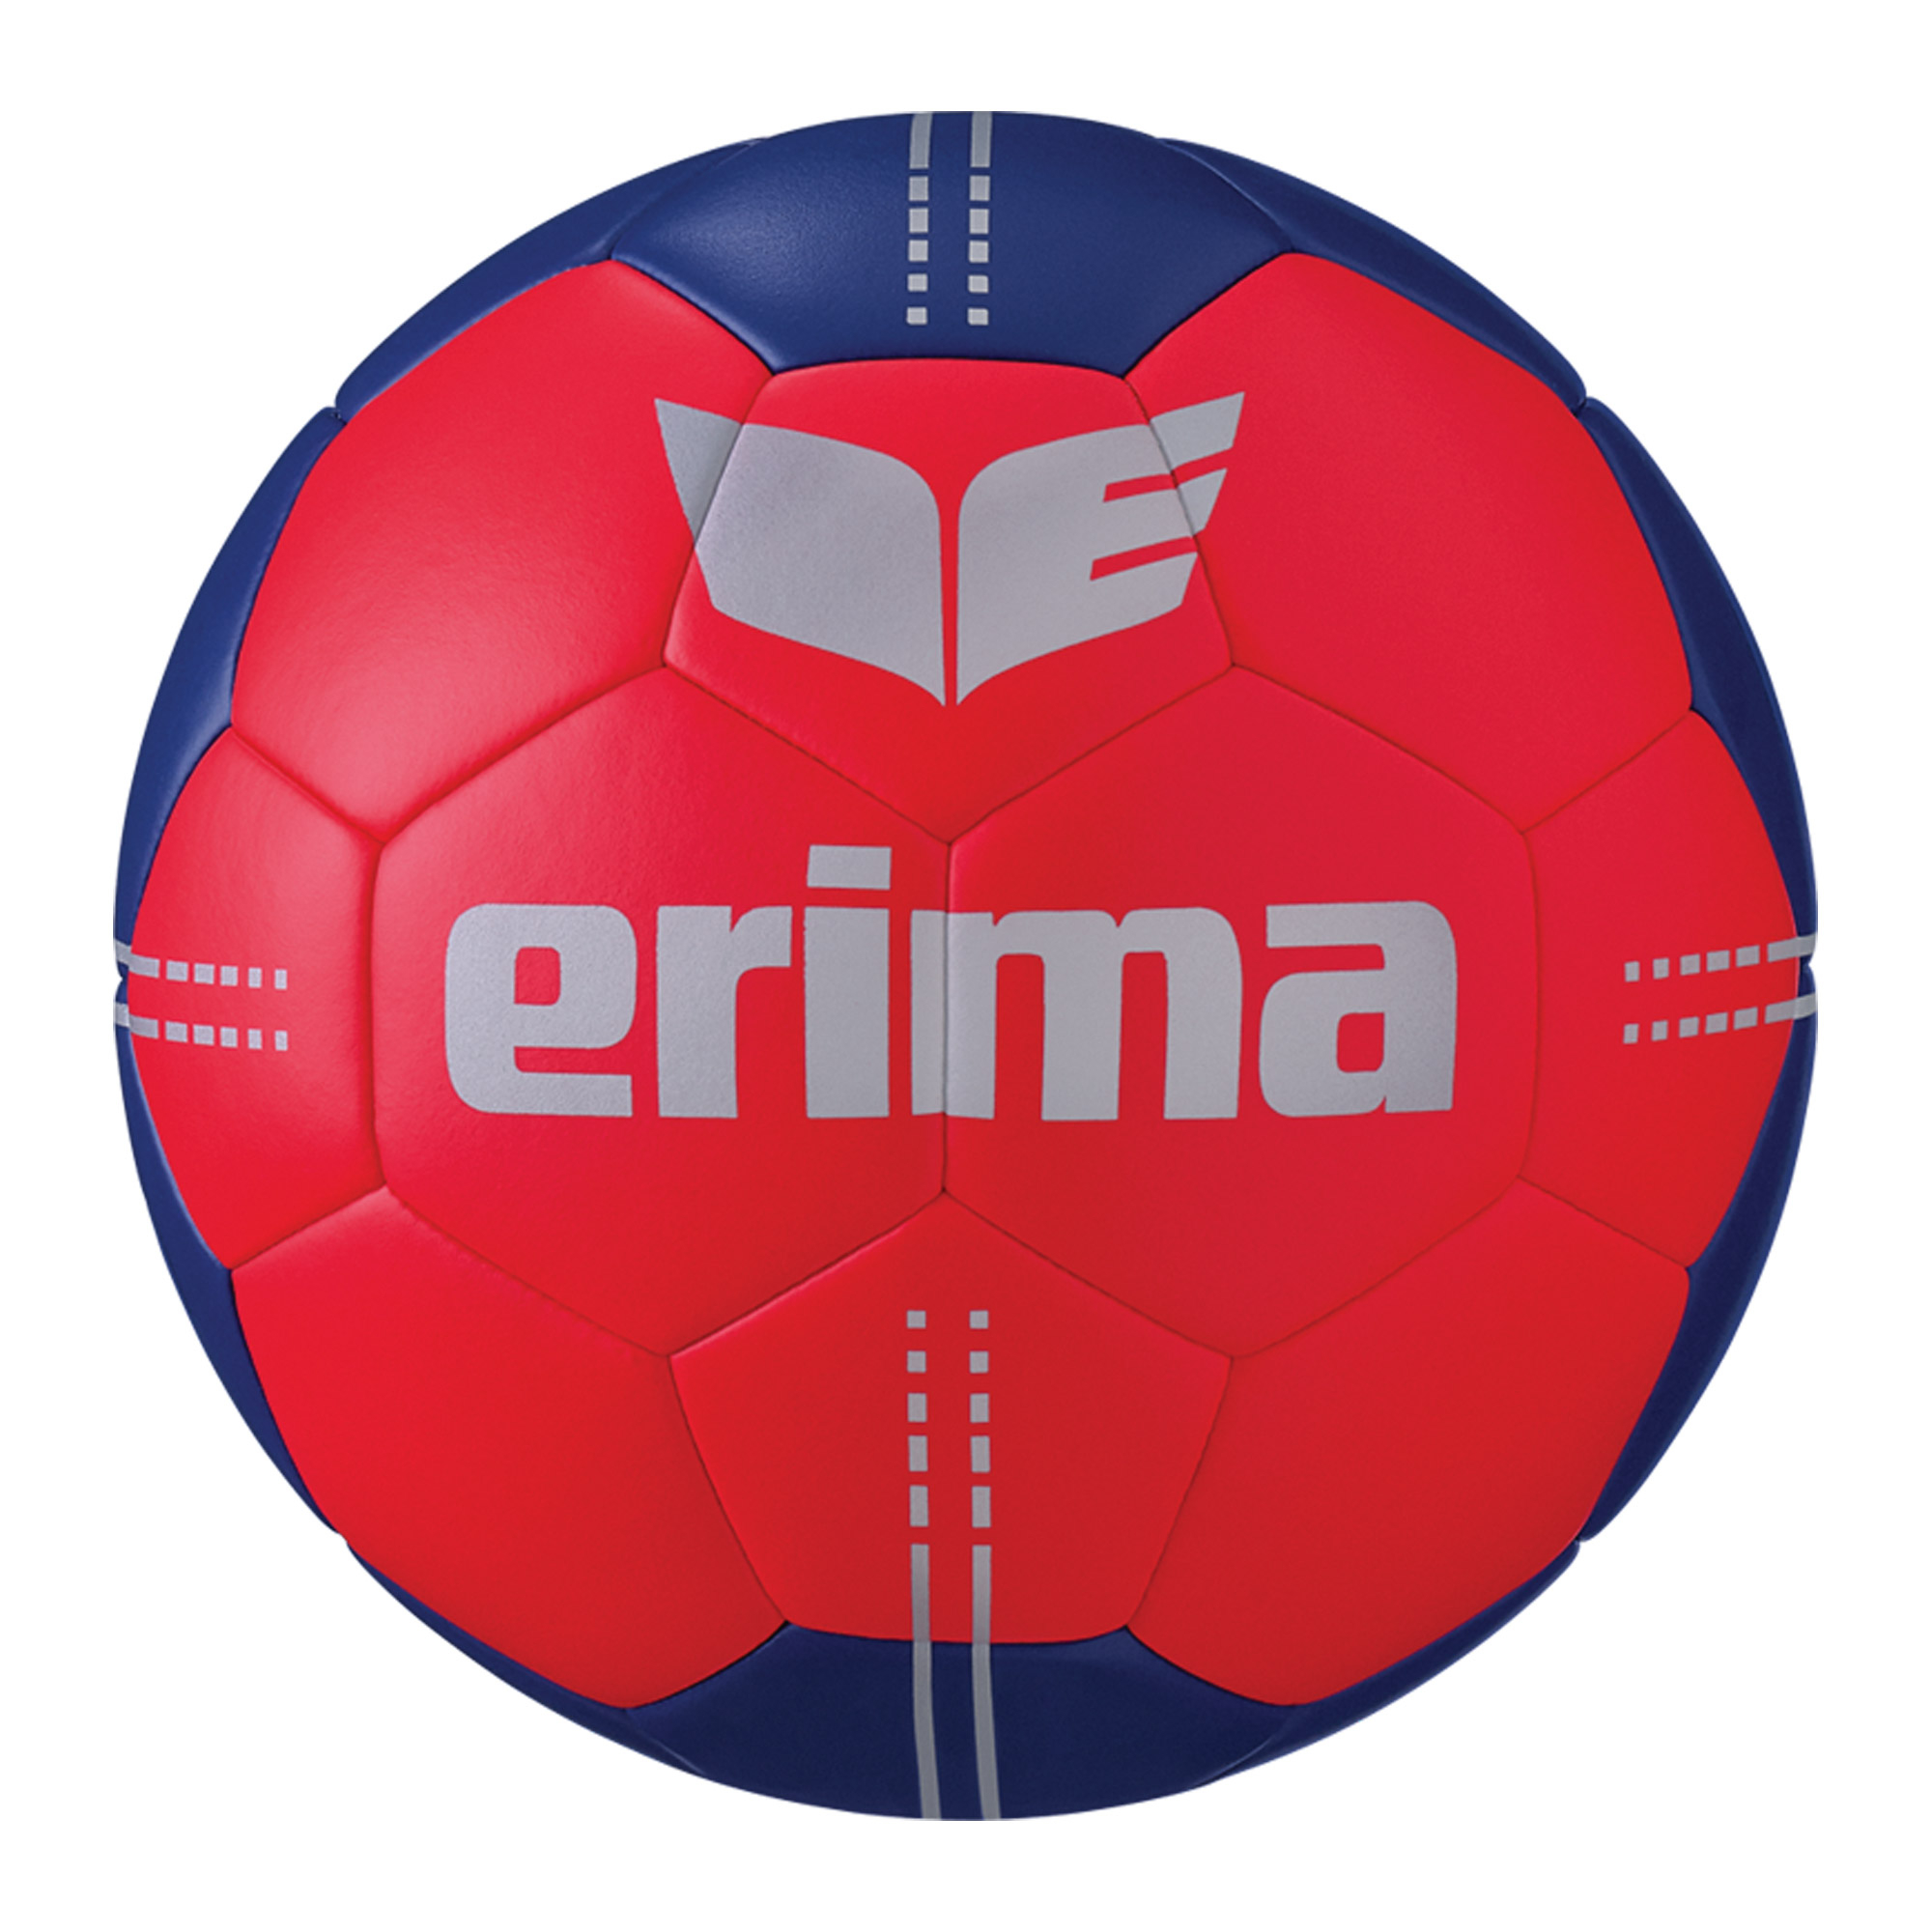 Ballon de handball Erima Pure Grip No. 3 Hybrid